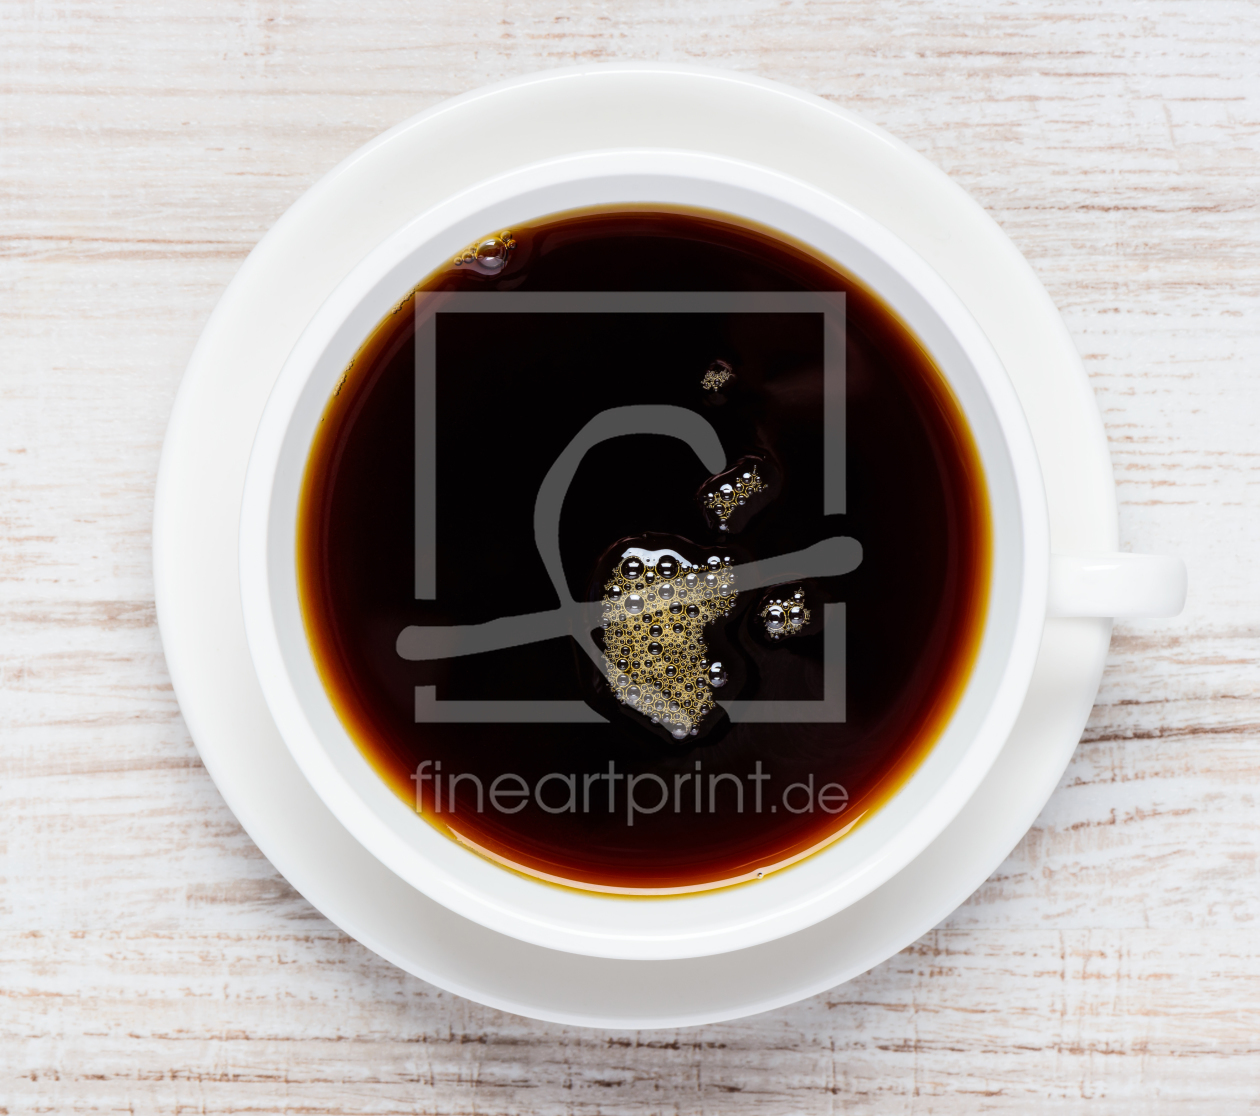 Bild-Nr.: 11830415 Kaffetasse mit Schwarzem Kaffee erstellt von xfotostudio